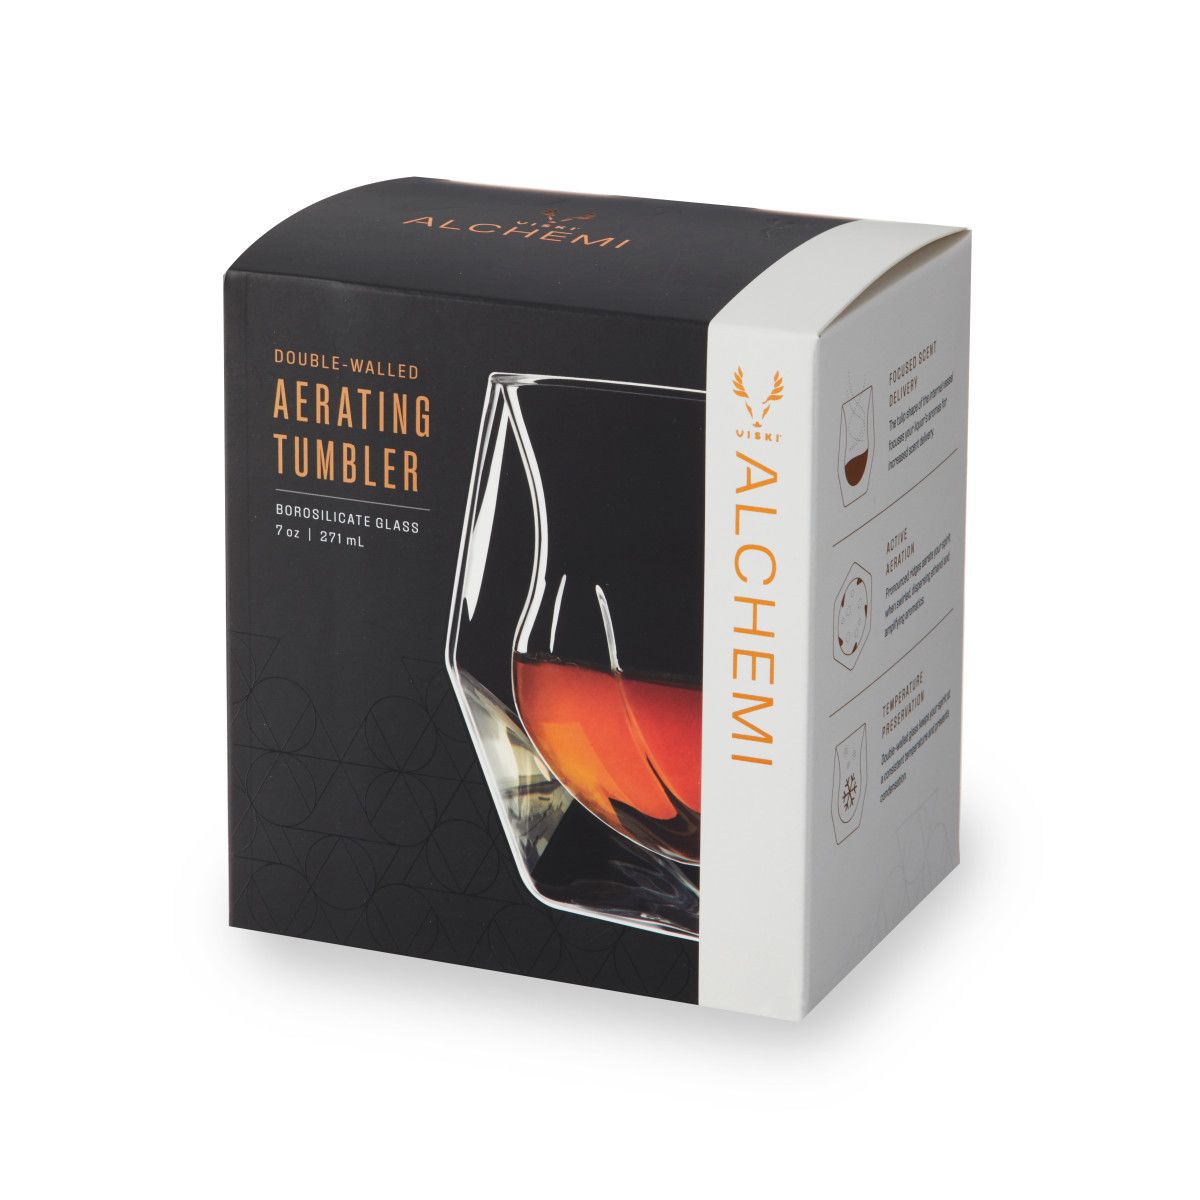 Alchemi Whiskey Tasting Glass by Viski, Pack of 1 - Foods Co.